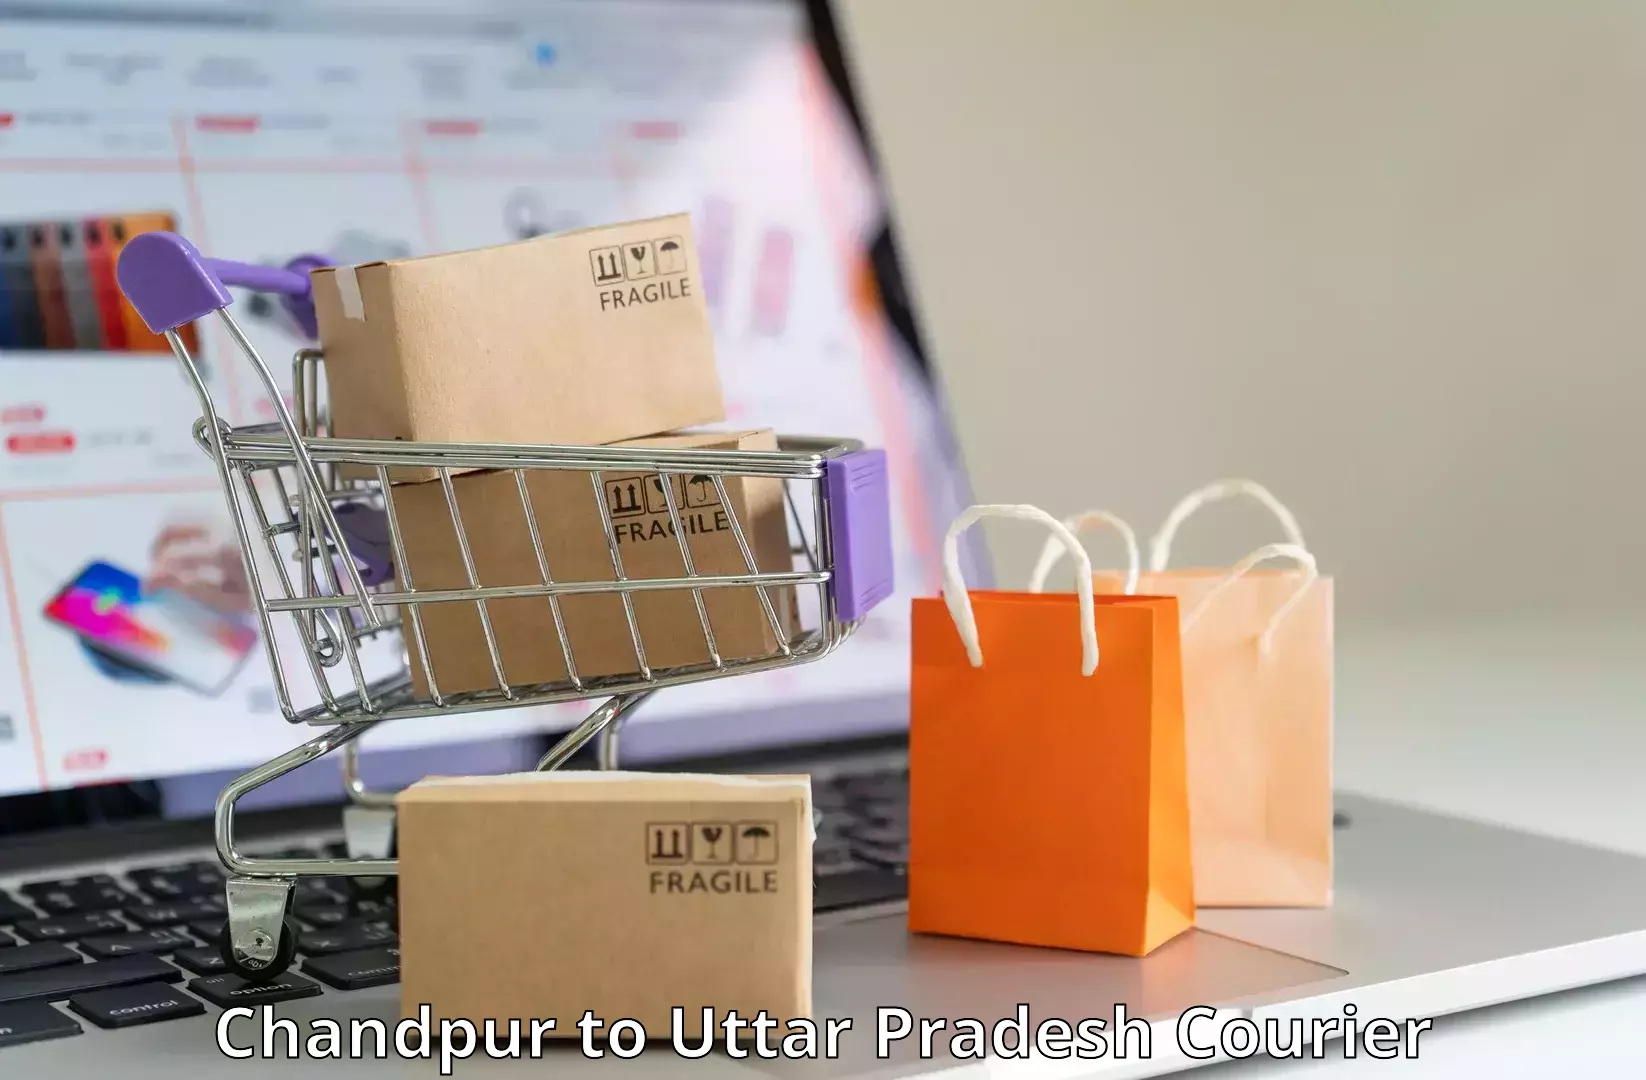 Custom courier packaging in Chandpur to Kushinagar